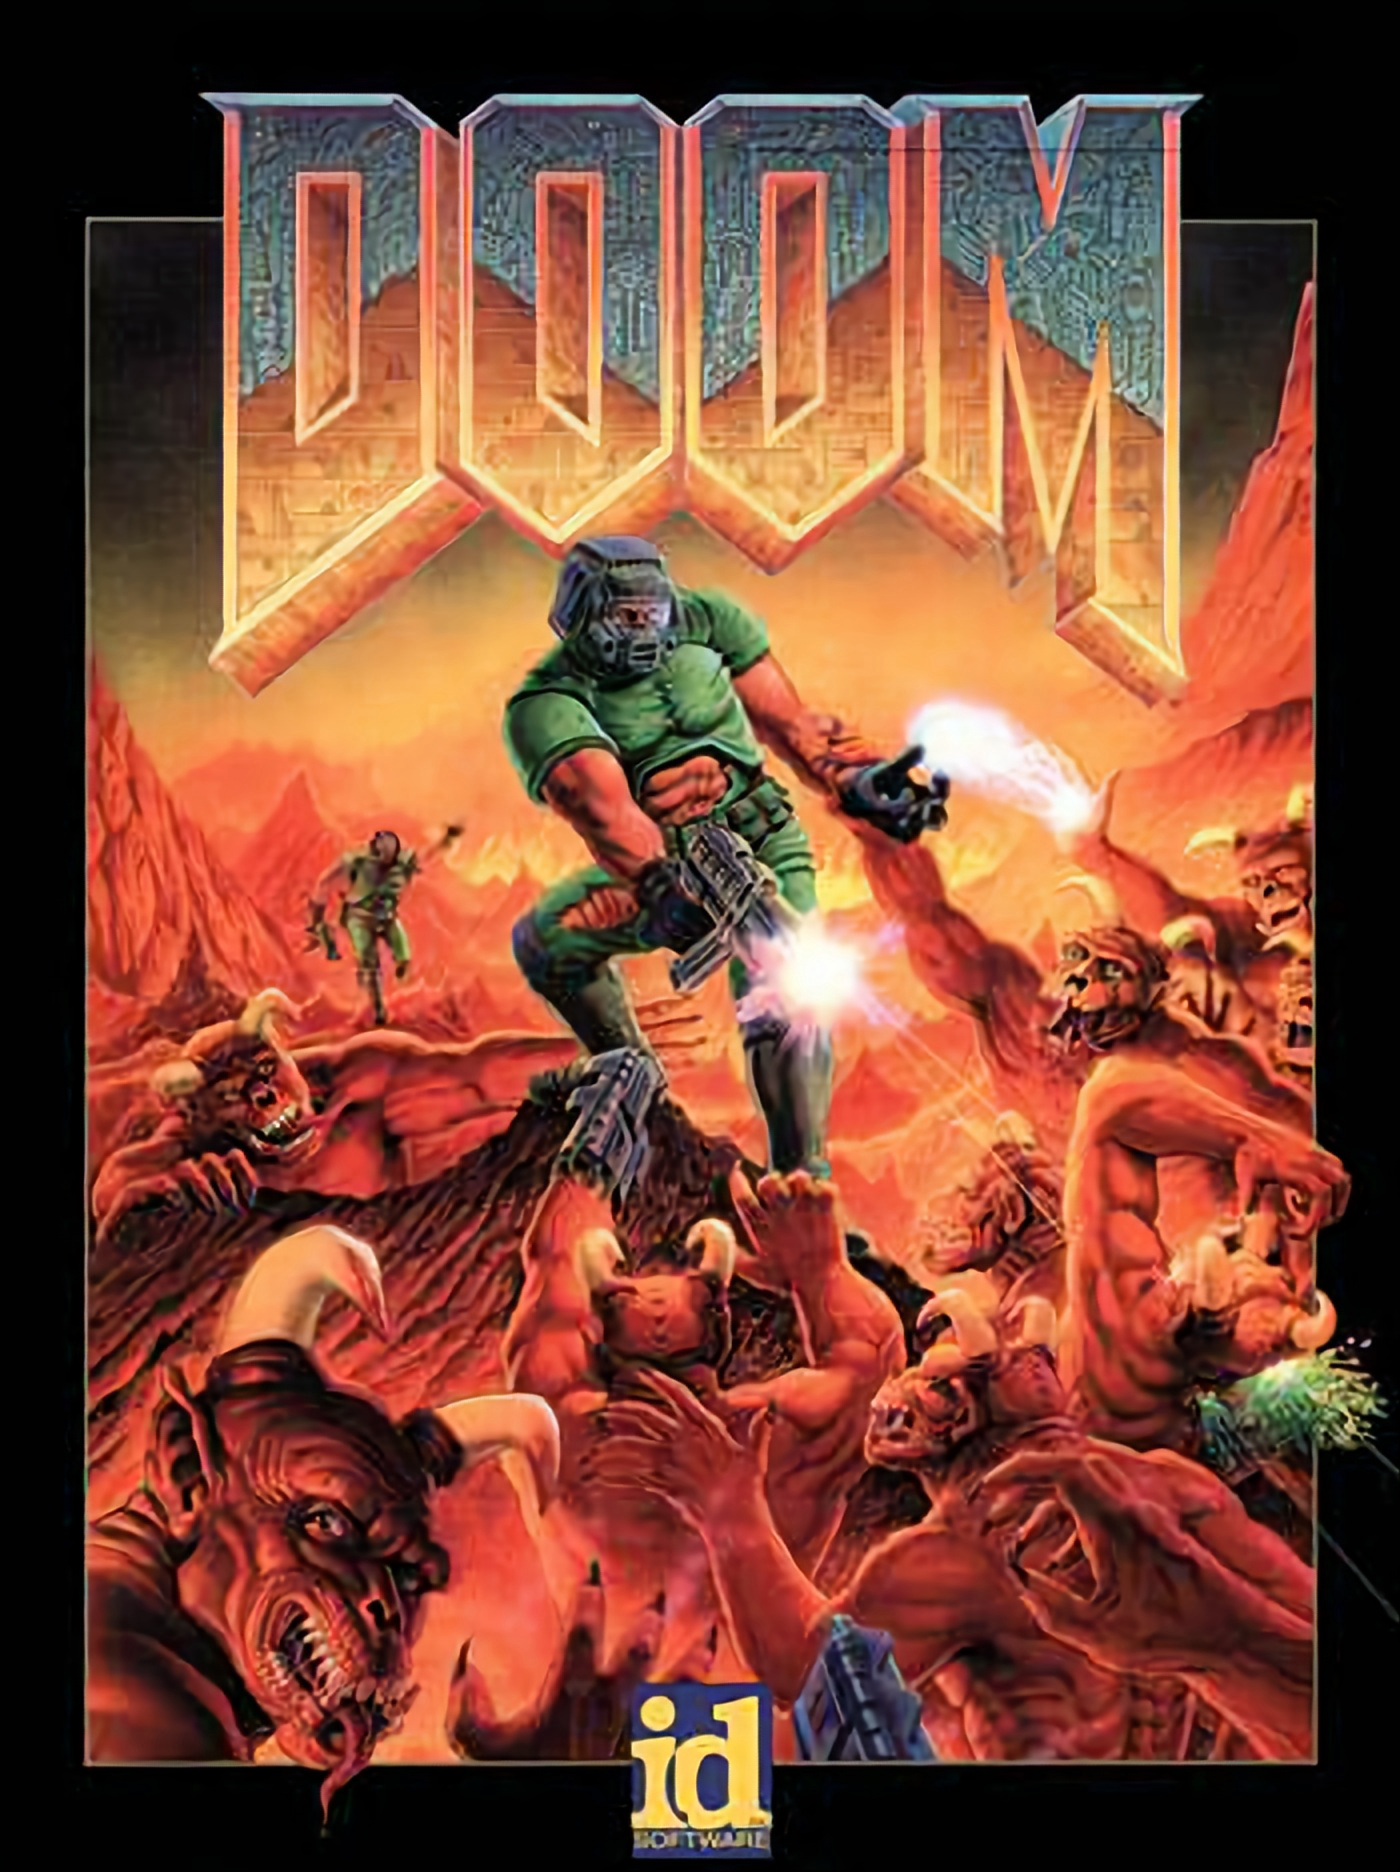 DOOM (1993) Xbox (ONE SERIES S|X)KEY🔑